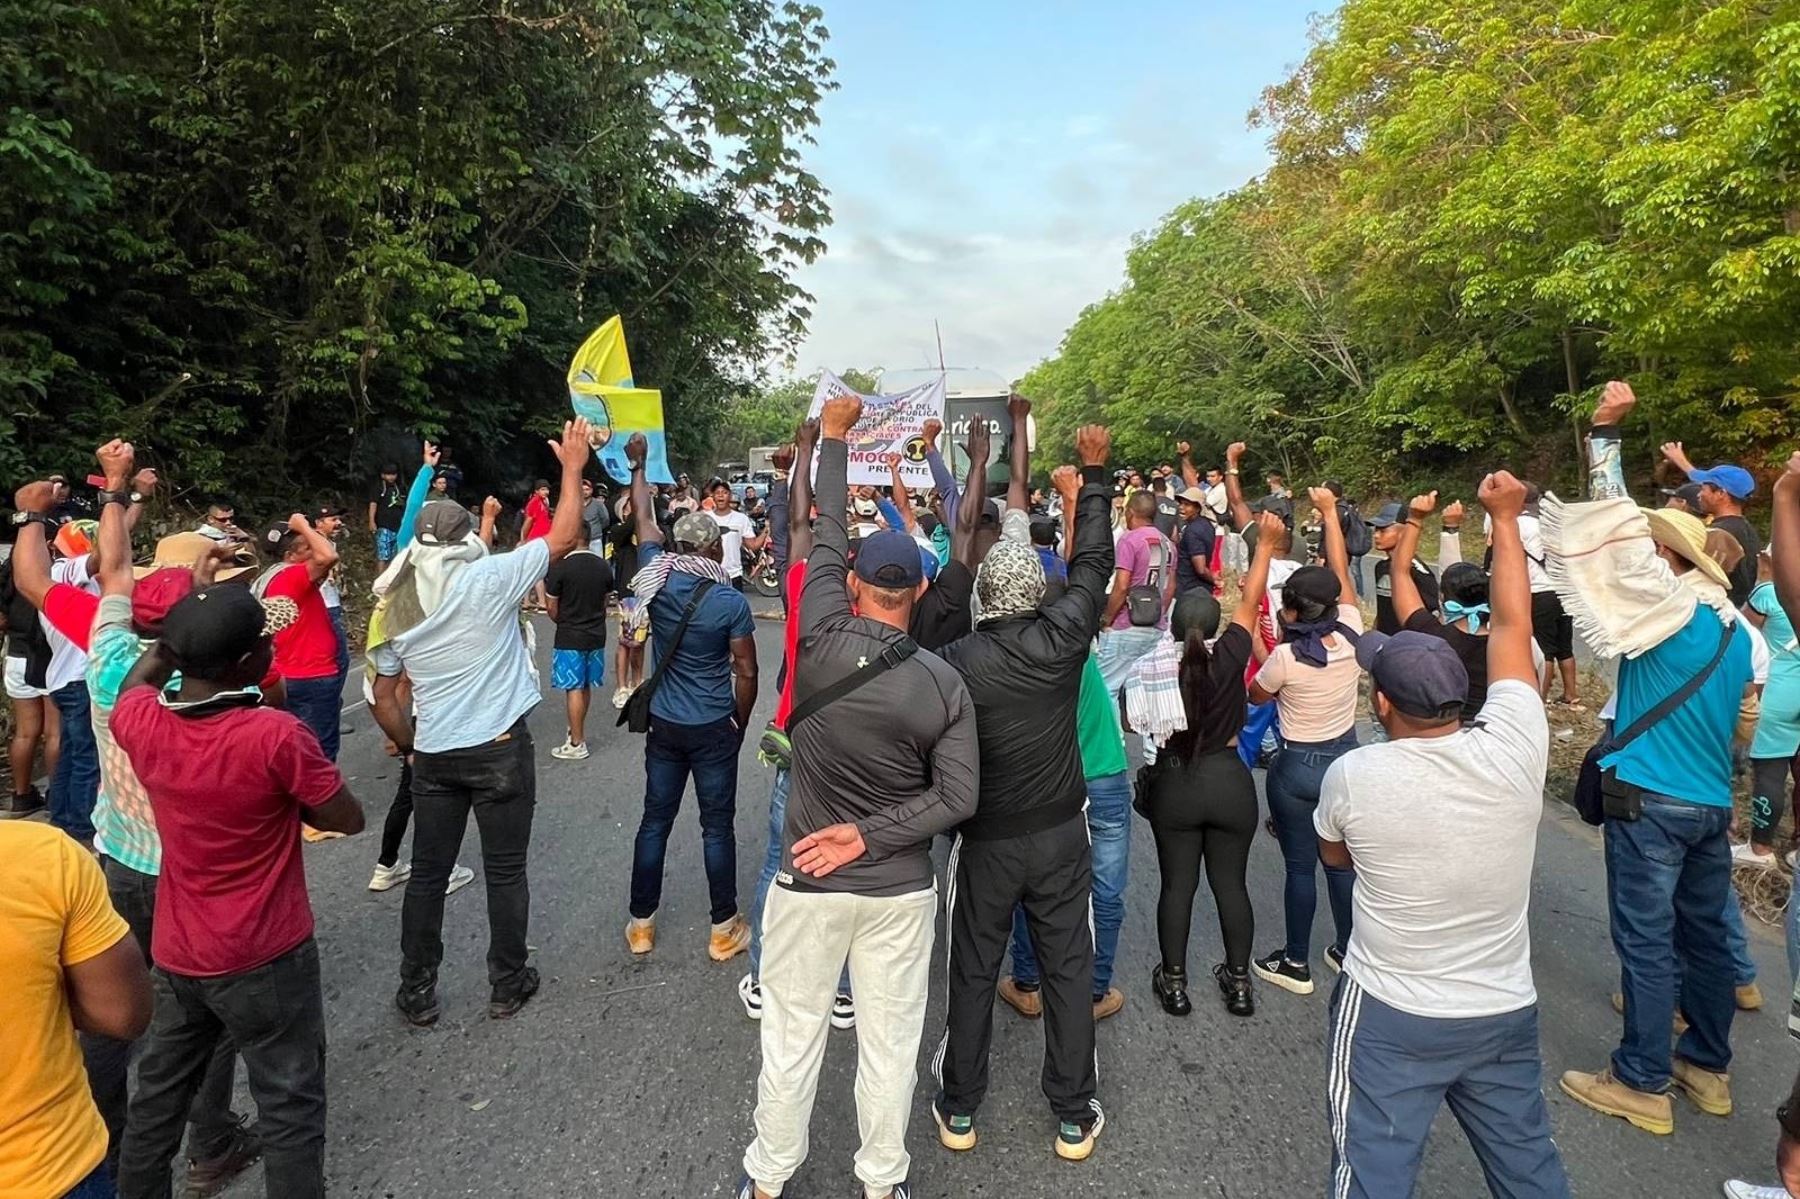 Las manifestaciones en Colombia aumentan en intensidad y frecuencia (imagen referencial de archivo). Foto: Coordinador Nacional Agrario CNA-Colombia/Twitter.